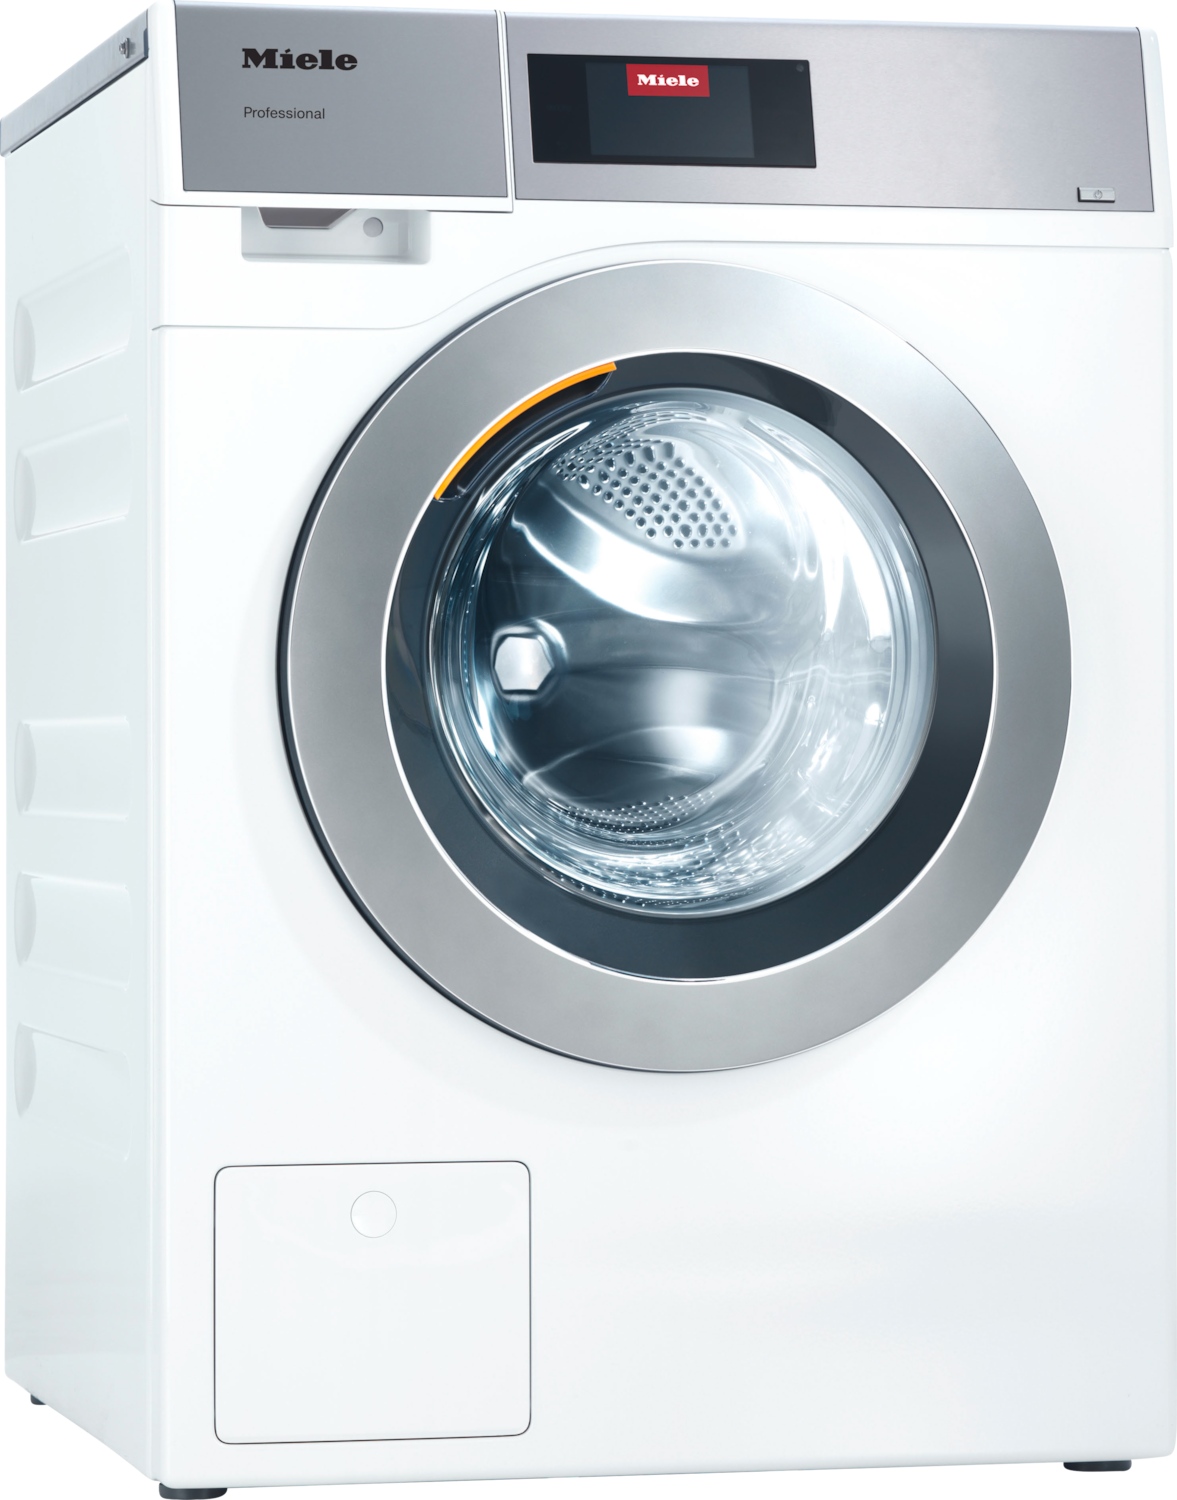 PWM 907 [EL DV] Professional Waschmaschine, Kleiner Riese, elektrobeheizt, mit Ablaufventil Produktbild